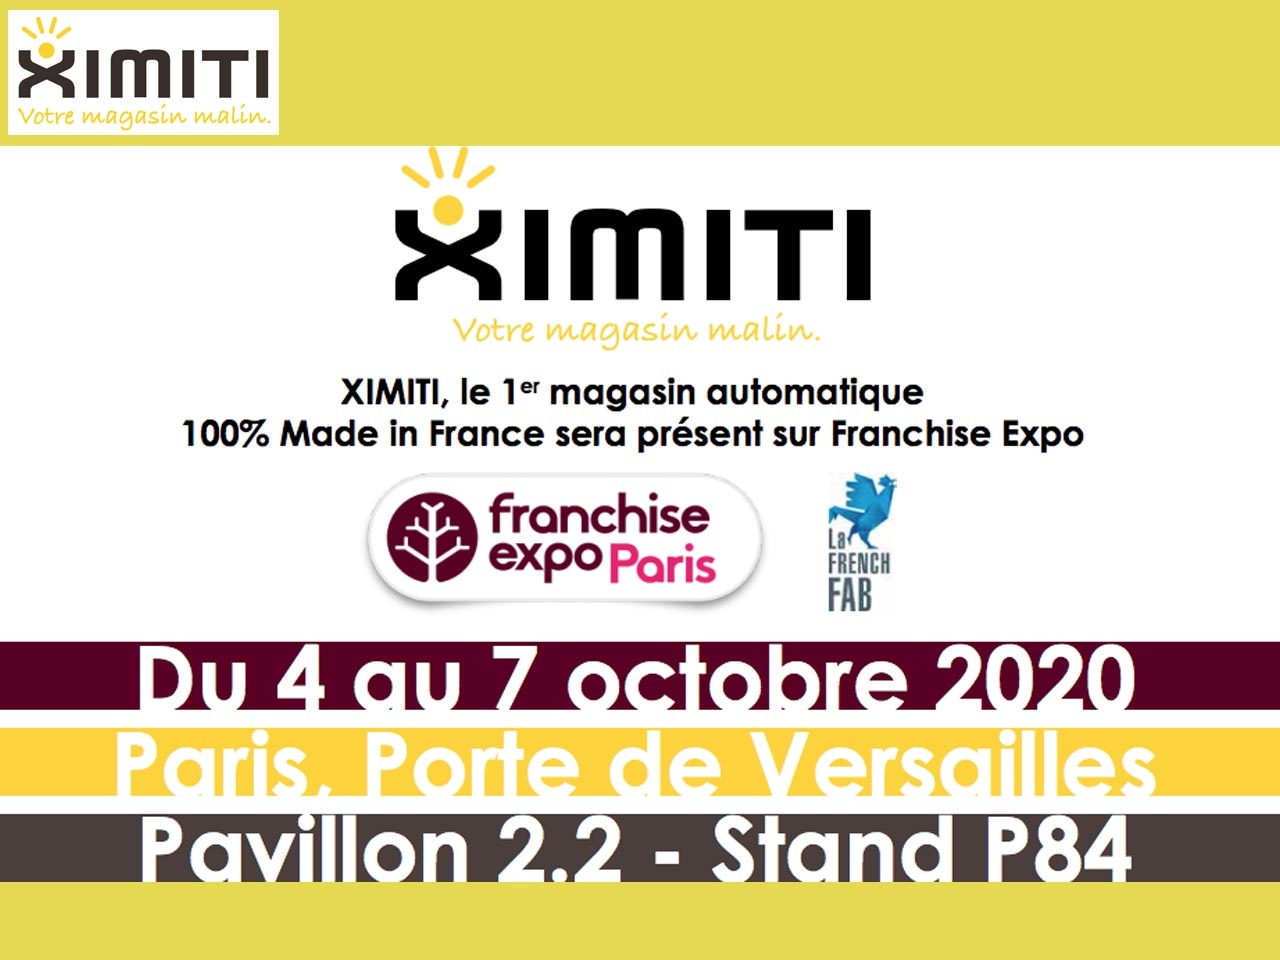 XIMITI, le 1er magasin automatique 100% Made in France sera présent sur Franchise Expo